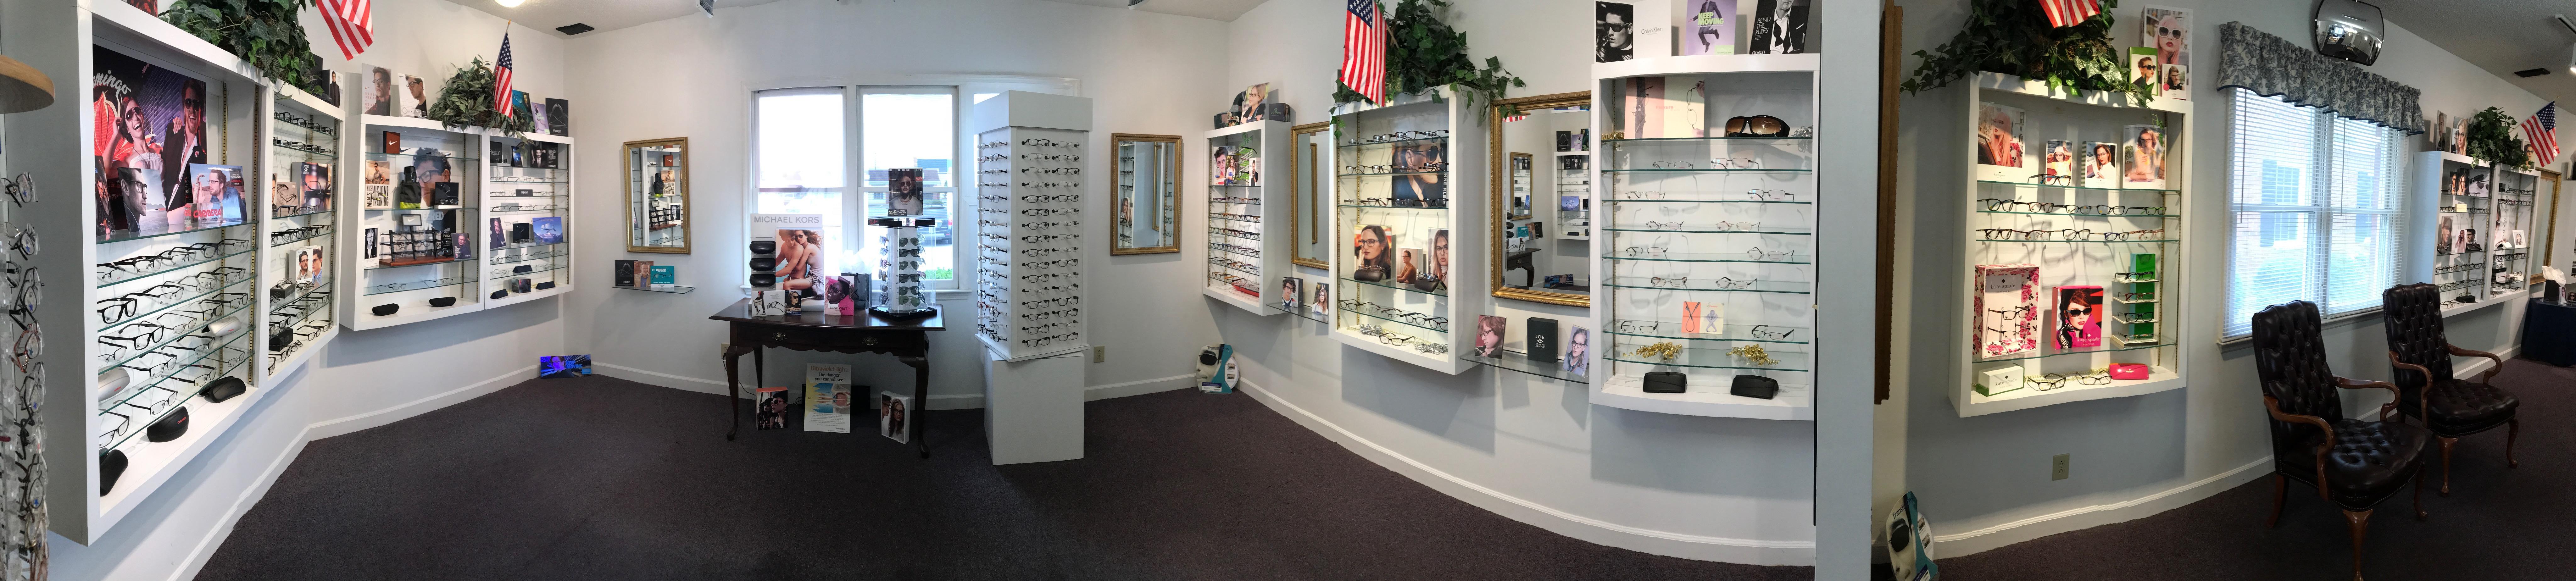 Community Eye Care Photo